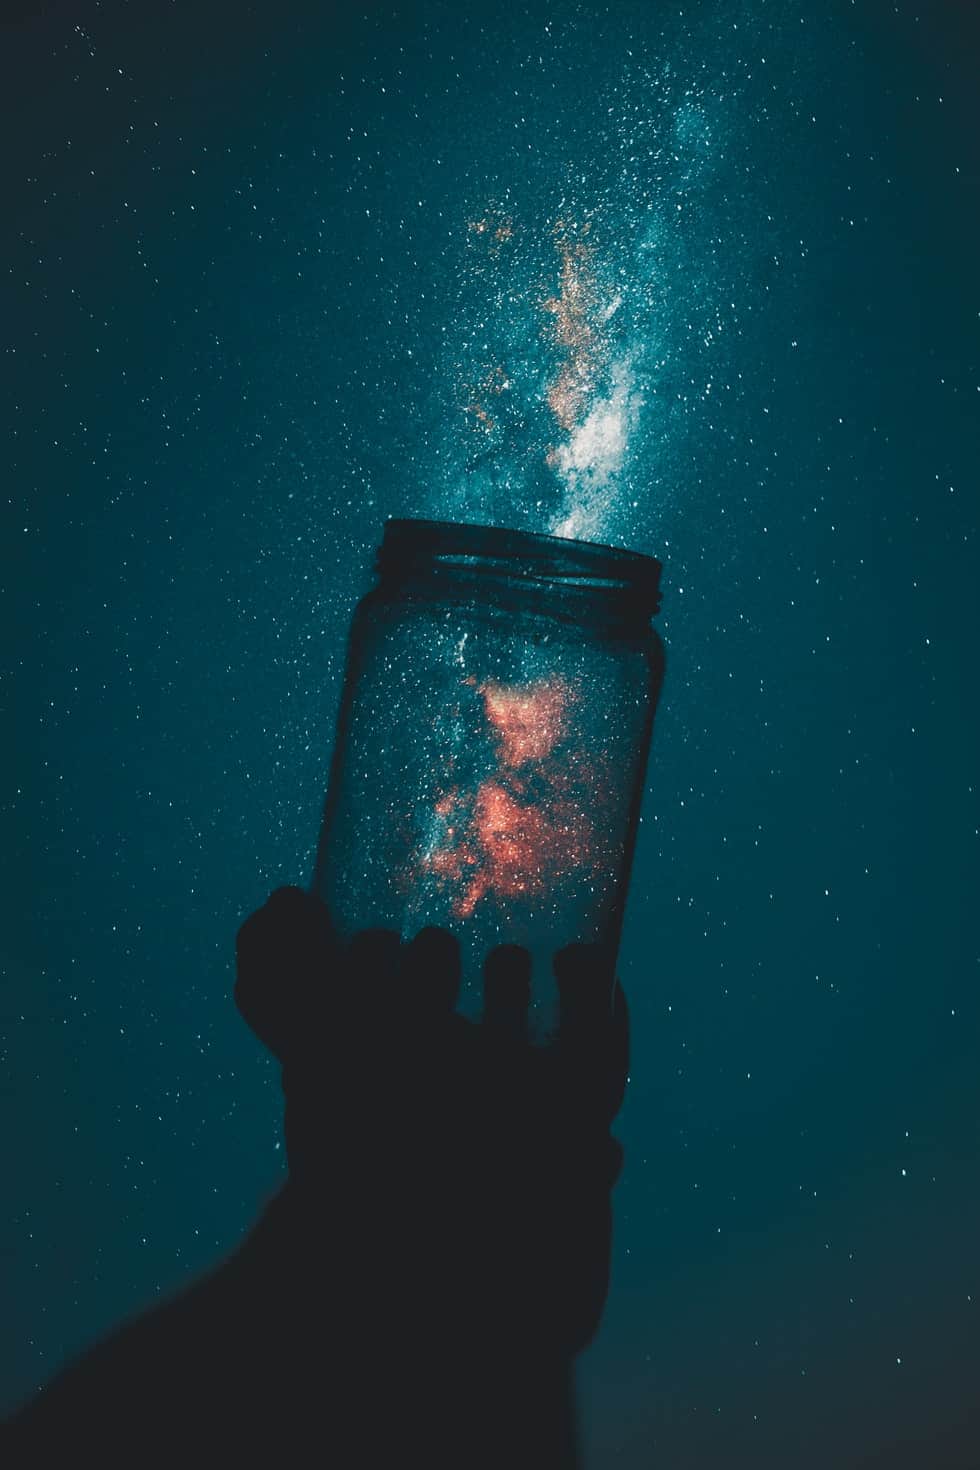 galaxy in a jar